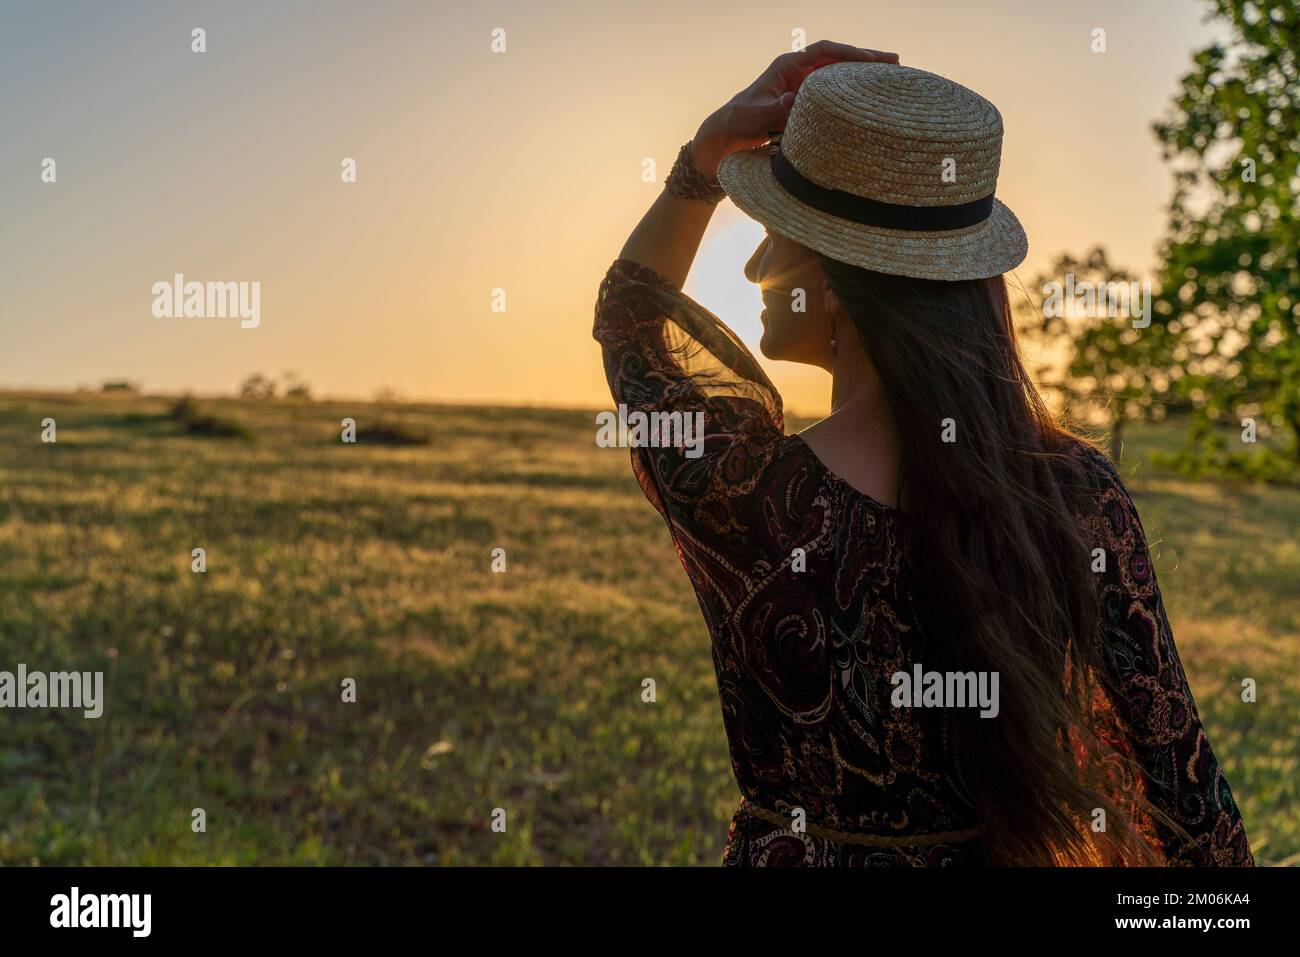 Eine glückliche Frau reist allein im Wald bei Sonnenuntergang, in einem langen Kleid, Hut und einem Blumenstrauß. Frohe Ferien. Rückansicht einer glücklichen Frau Stockfoto